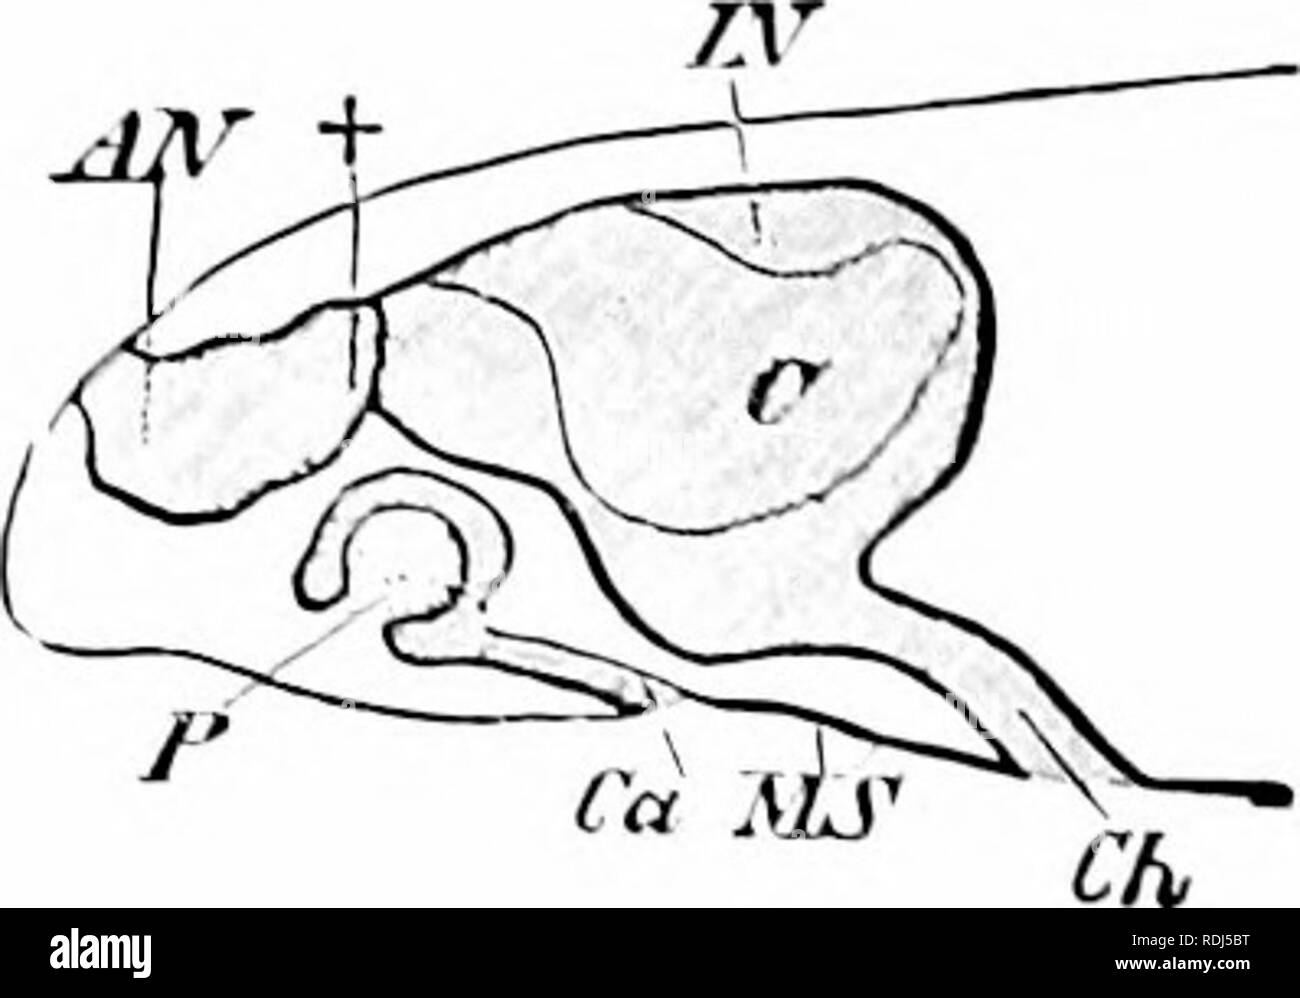 . Un manuel de zoologie. Zoologie. Fig. 52q. Fig. Fig. 520.-Section d'cpilliclium olfactif d'un lisli (Bdoiic Ilcrtwig de O., après Blaue). c, epitlielium : k, bourgeons olfactifs ; ; ;, TNS-es. Fig. c ; :;o.-diagramme du nez de lizard (après 'iedersheimV .1-V, l'cavité nasale. C oIfactor* sac : Cii, Stcnson choana l'air ; Ch. ; /A' l'intérieur, ca nasale"c- ; MS, le toit de la bouche ; P, l'organe de Jacobson ; f, connc.ioii entre cavités nasales. ligne latérale, d'être mentionné plus tard, d'tlshes branchiate et amphibiens et des amphibiens vblr (;e, et semblent donc subserve et spécial sensations impor- Banque D'Images